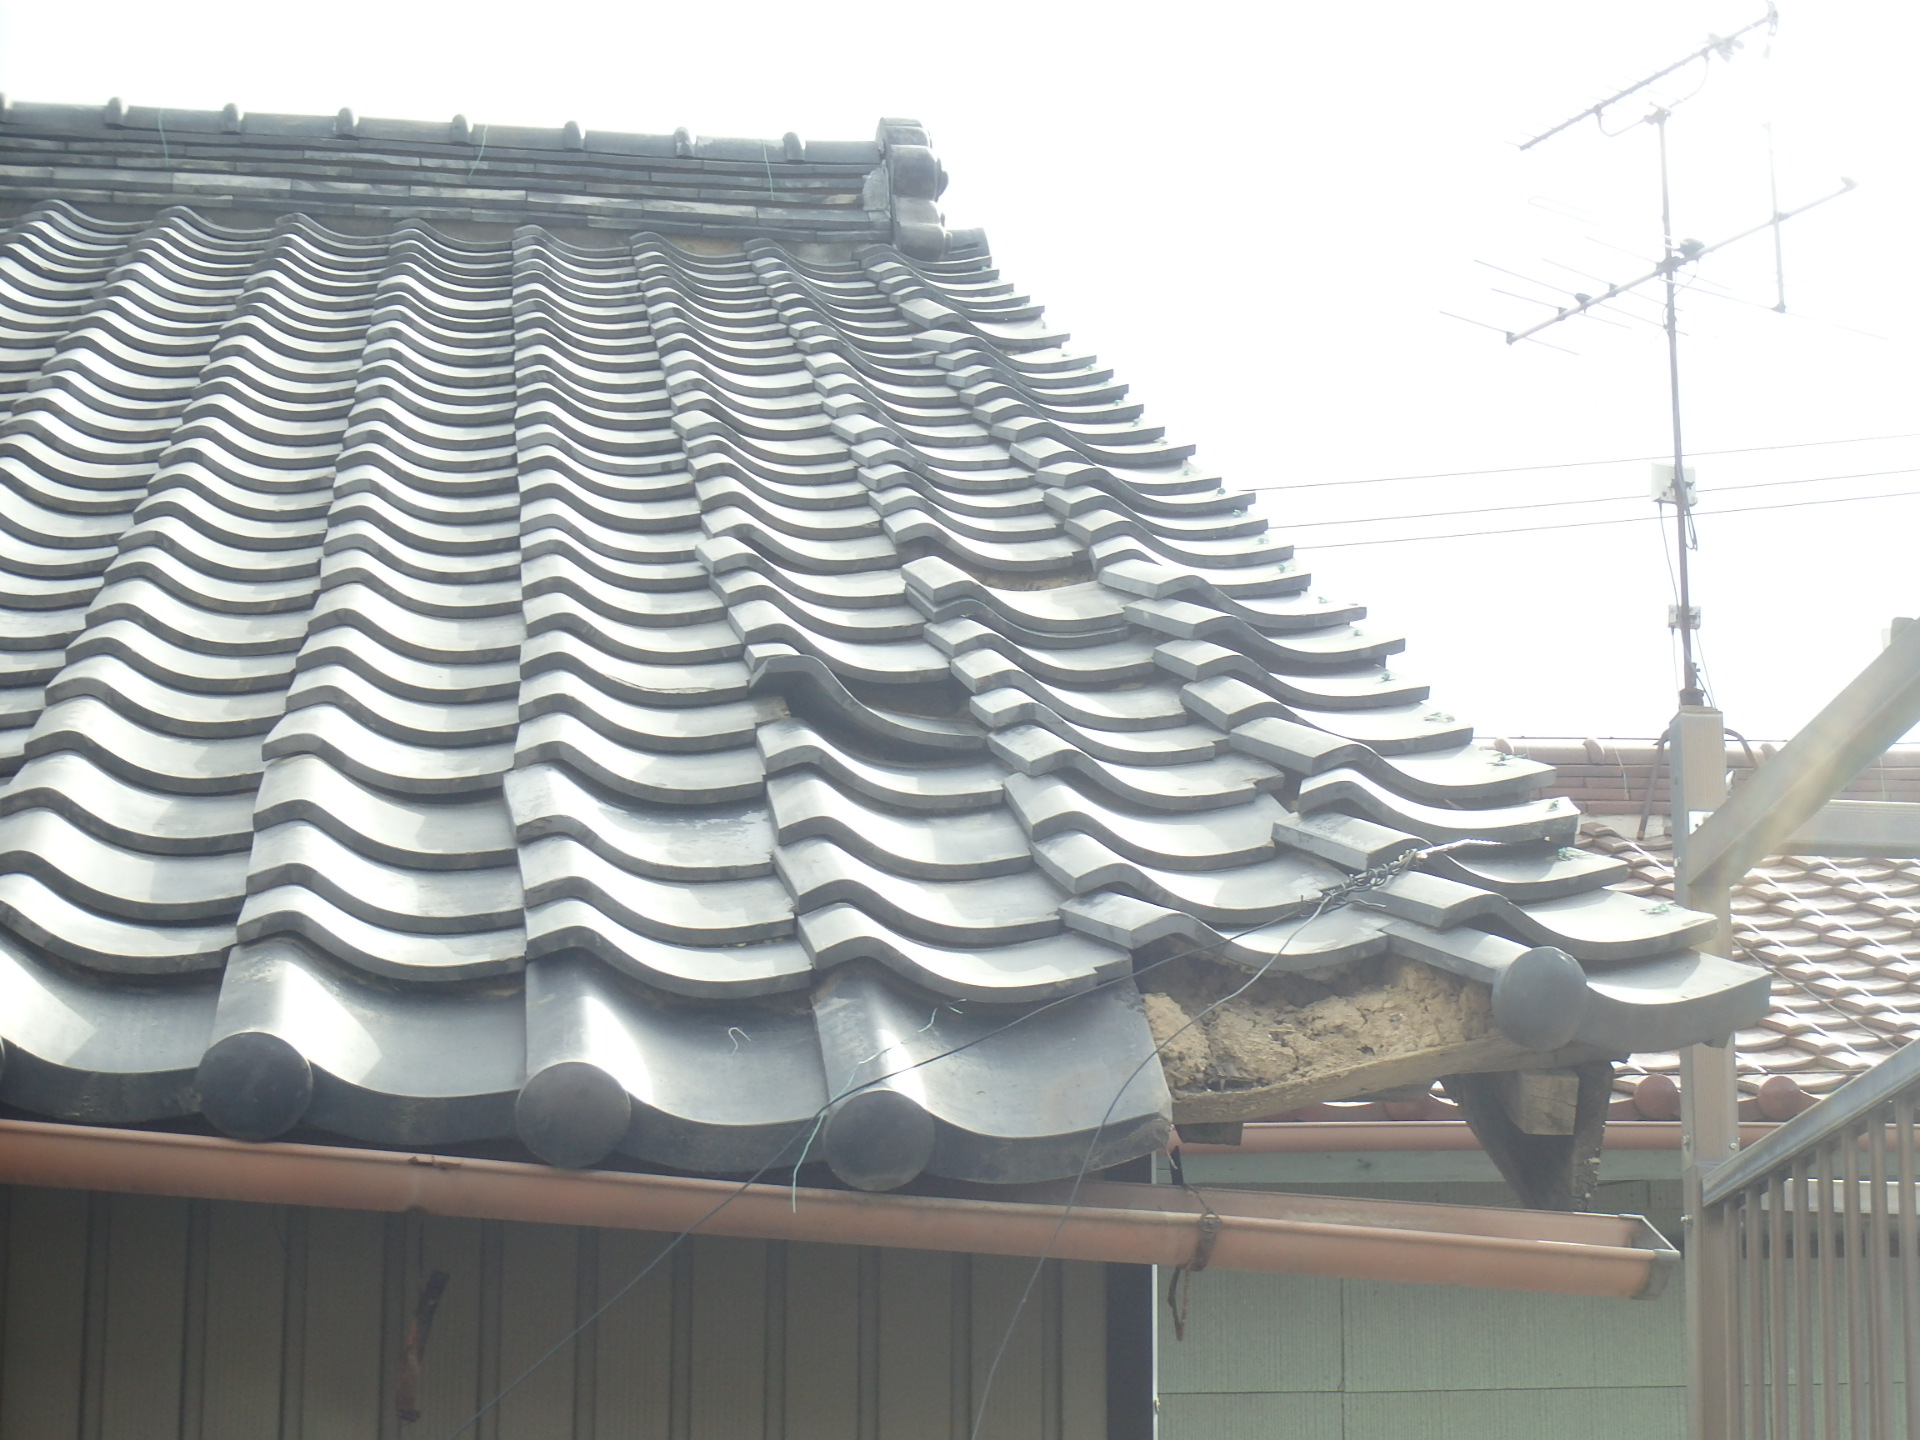 桑名市の瓦屋根、瓦の寿命を迎え一部崩れた瓦屋根